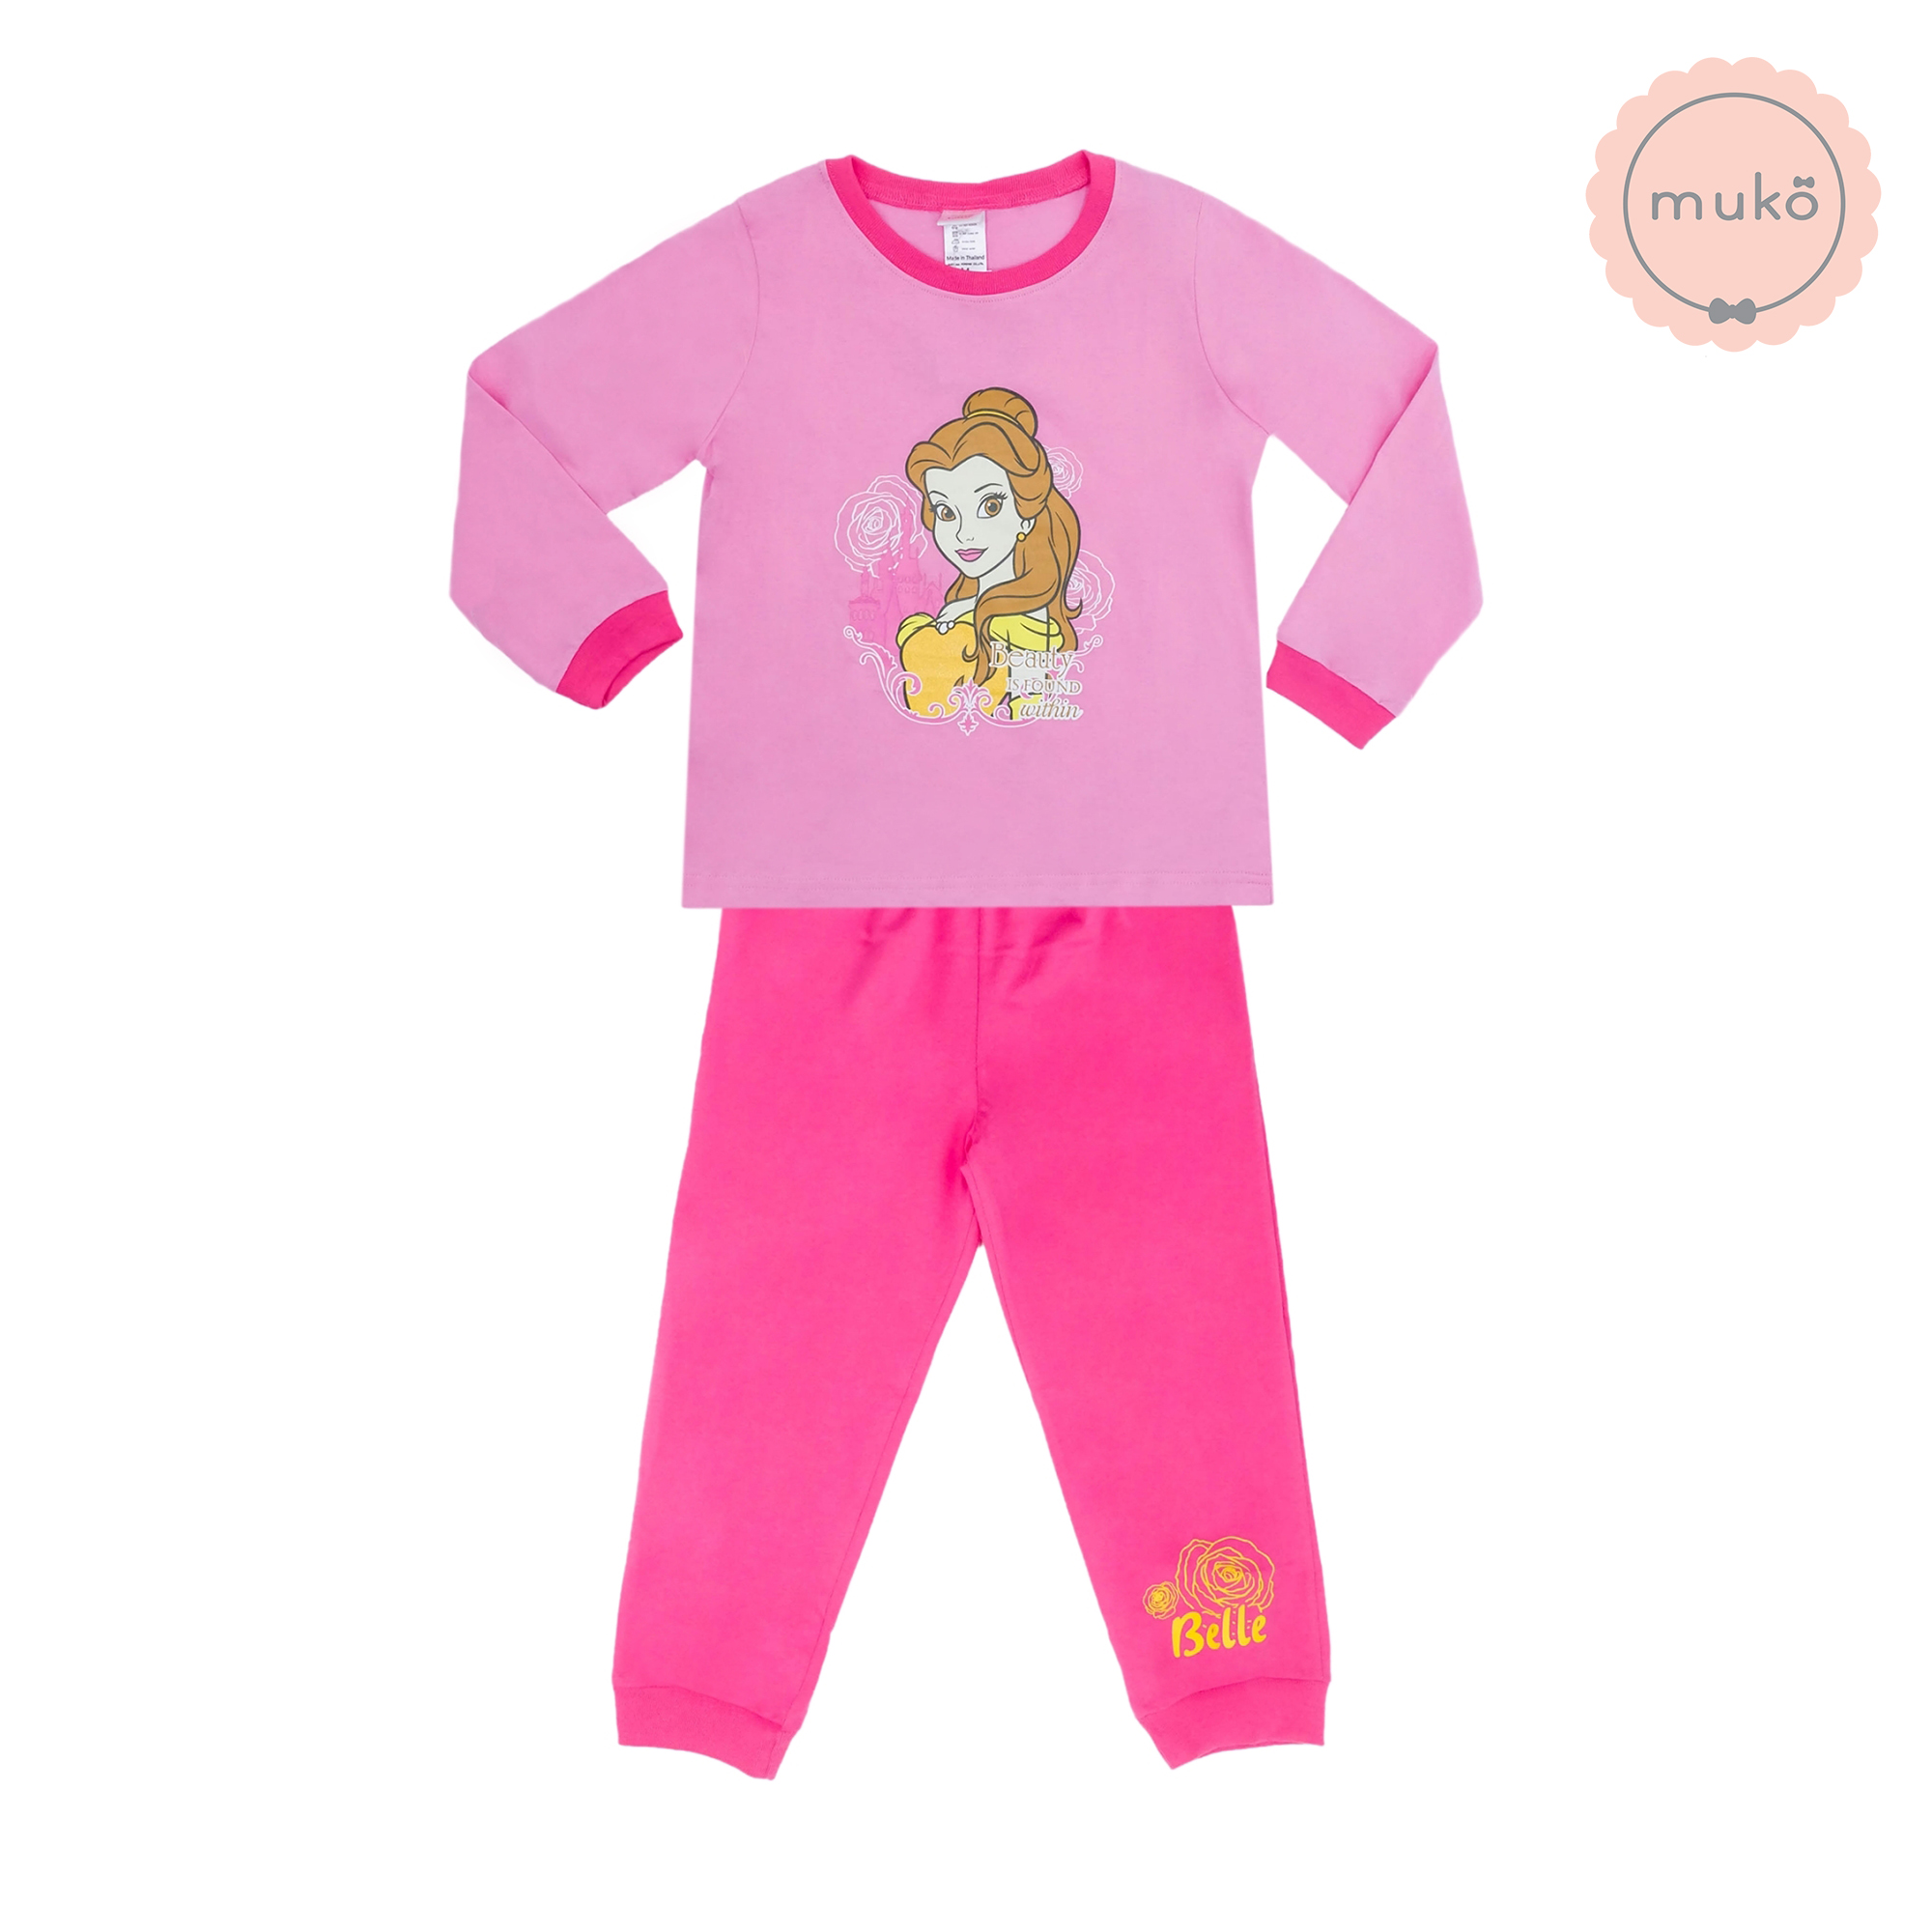 ชุดเด็ก 4-5 ขวบ แขนยาว-ขายาว (Size S) DPC127-03-XL-Pink S ลาย เจ้าหญิงเบลล์ Belle (เสื้อชมพูกางเกงชมพูเข้ม)